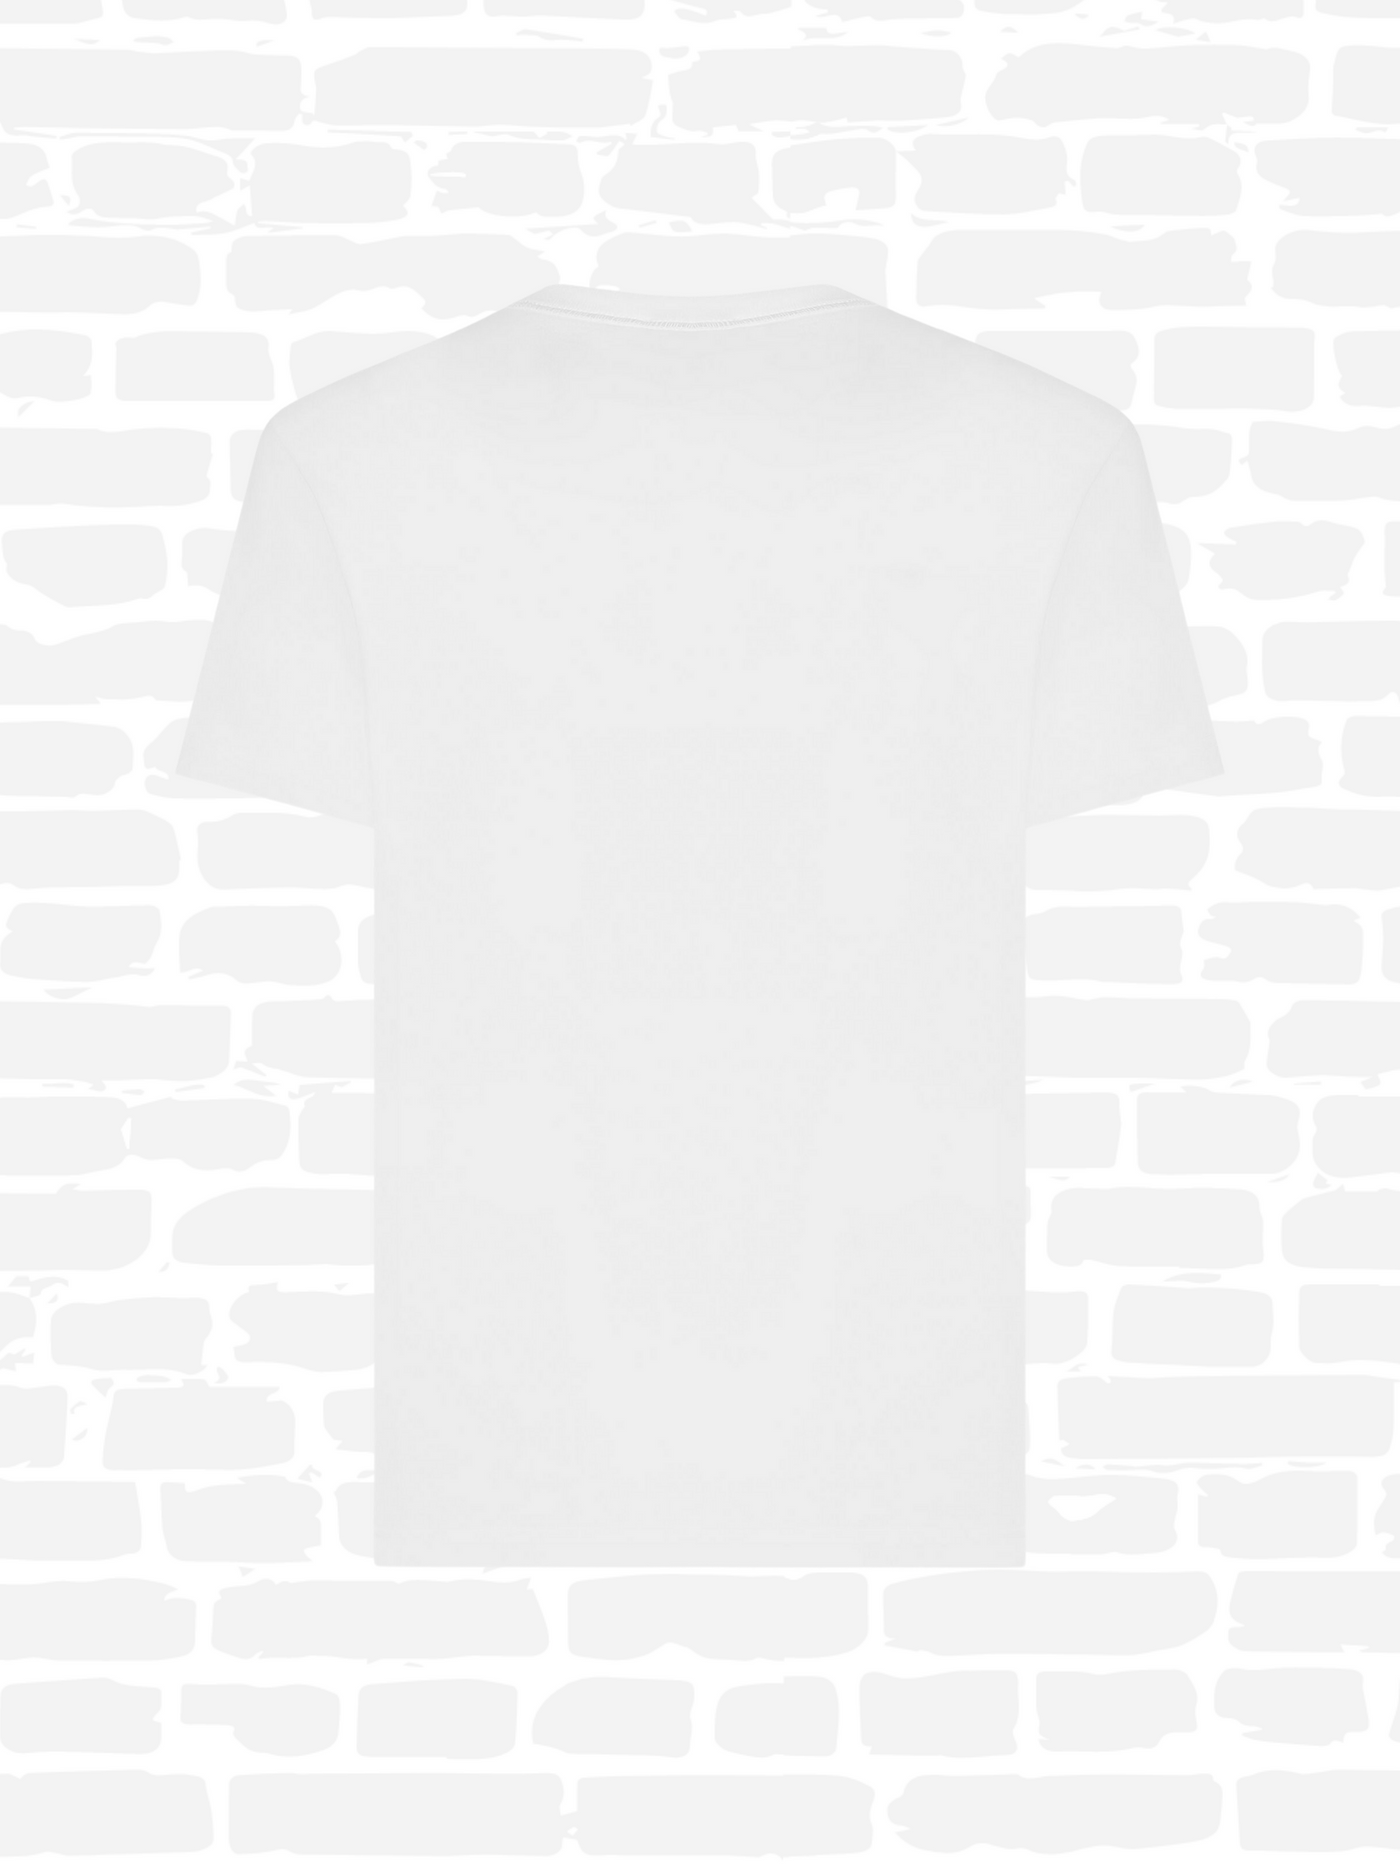 דולצ'ה גאבנה טי שירט צבע לבן DG Essentials crew neck T-shirt